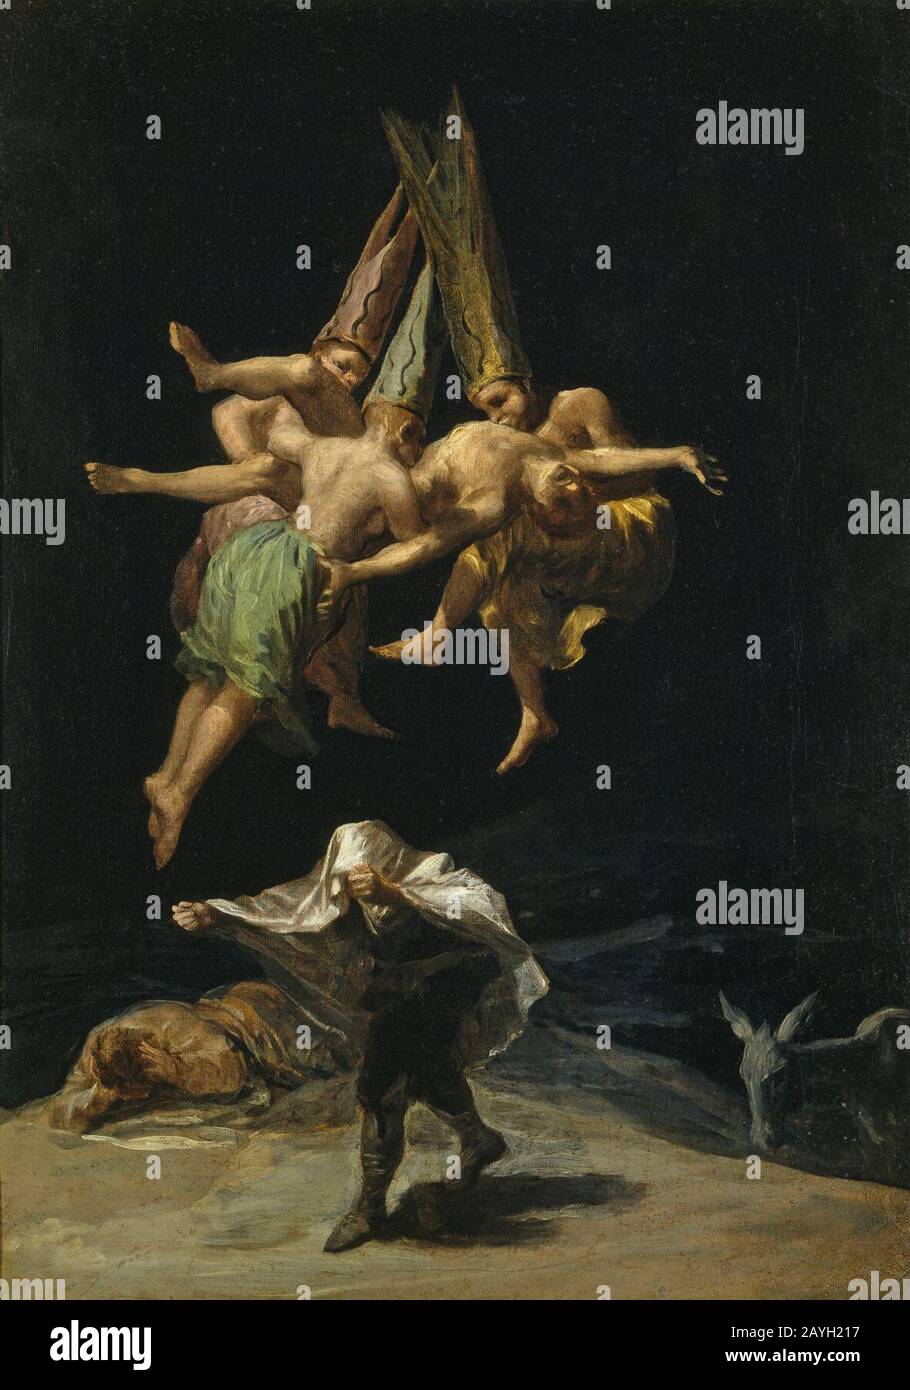 Francisco de Goya - Vuelo de brujas (1798). Stock Photo